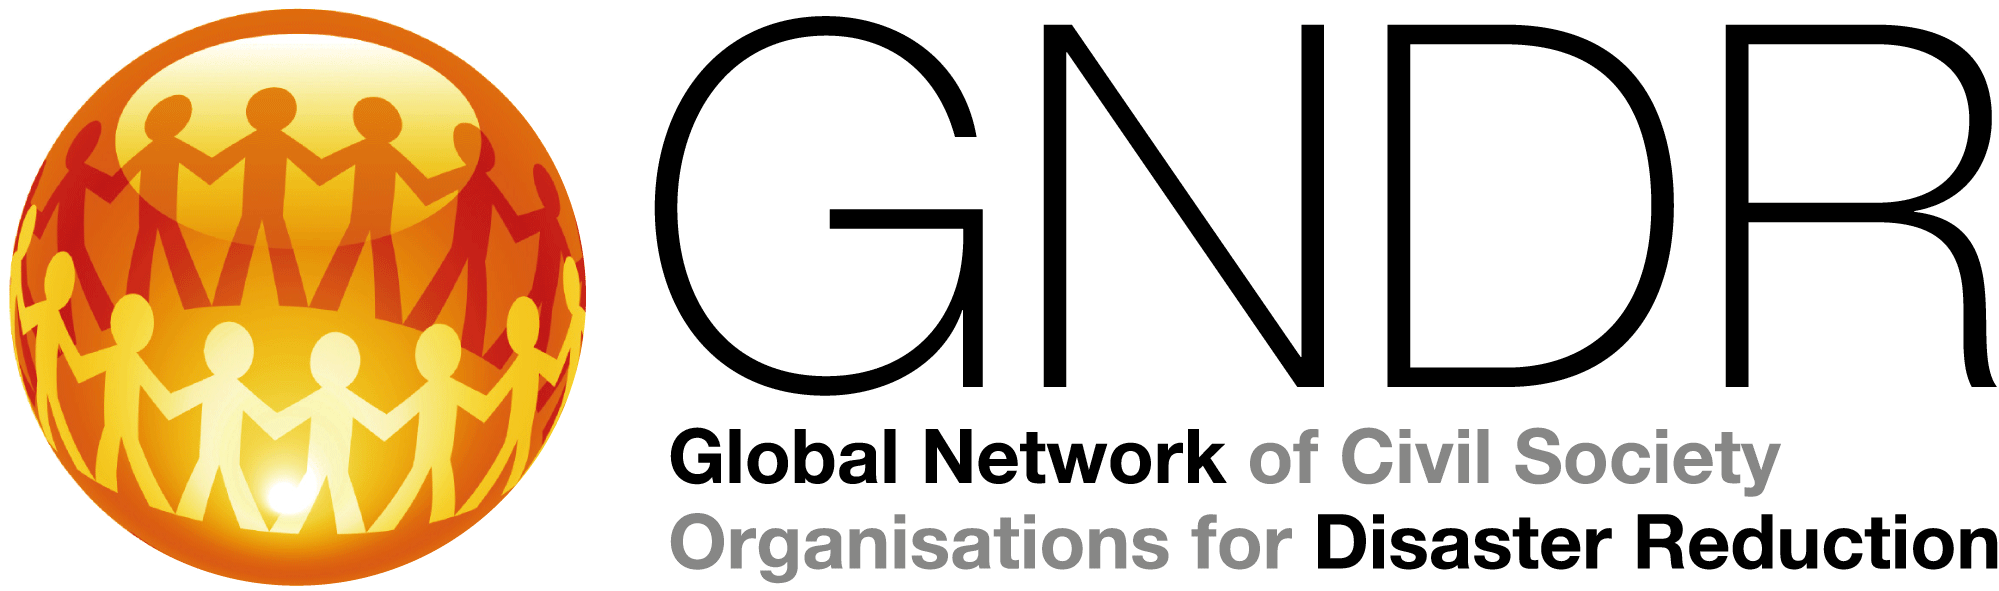 gndr-main-logo.gif